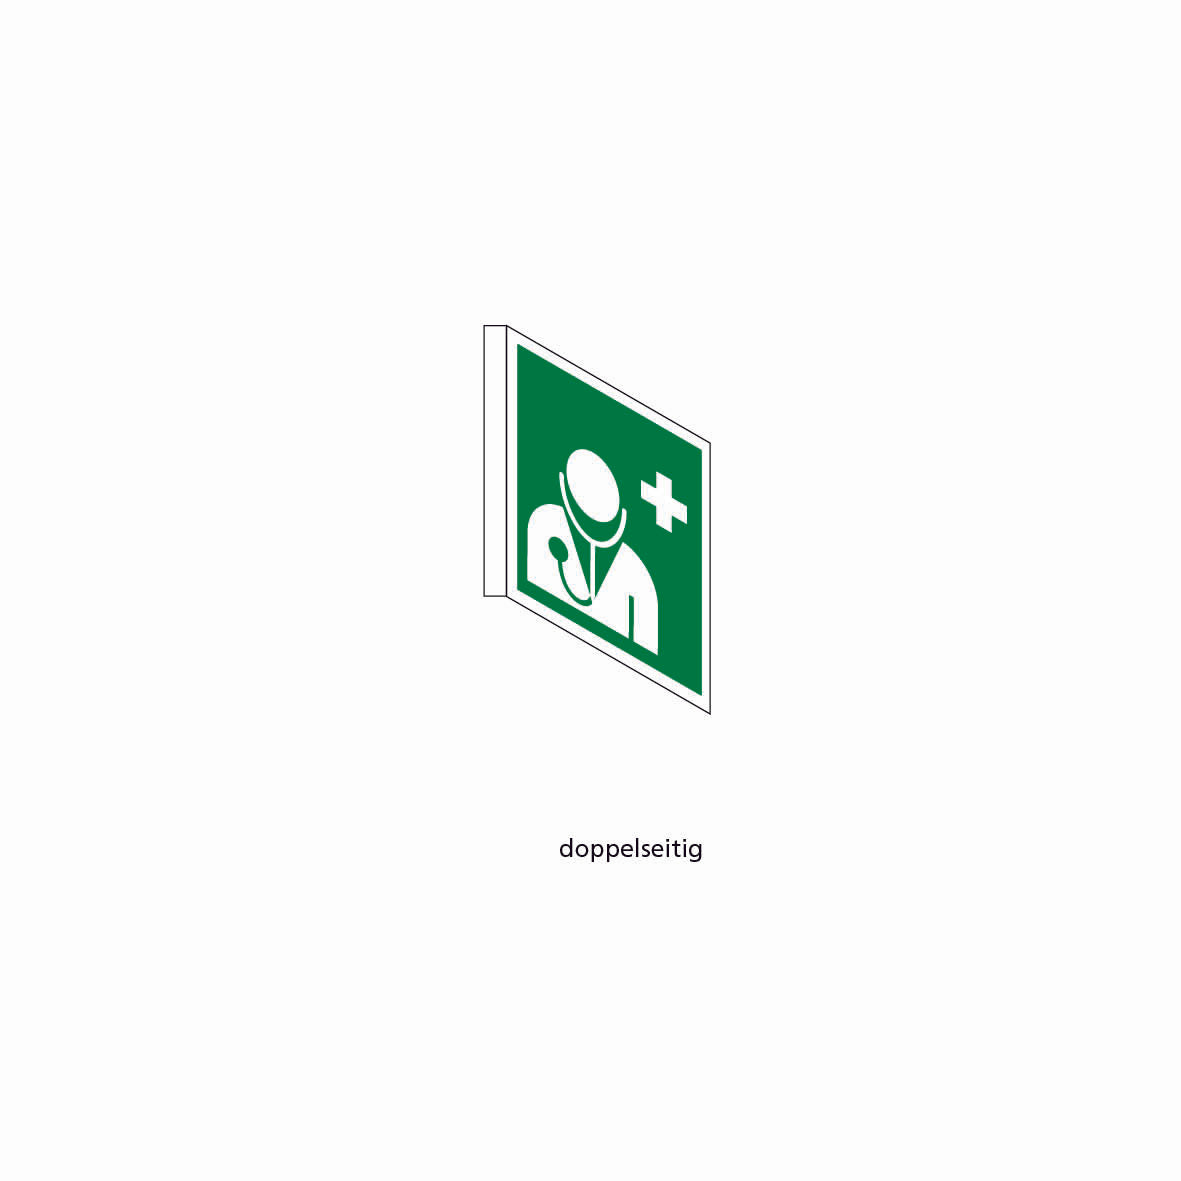 Fahnenschild doppelseitig, Rettungs- und Brandschutzzeichen, nachleuchtend, PK, 300 x 300 mm, gemäss Logobibliothek